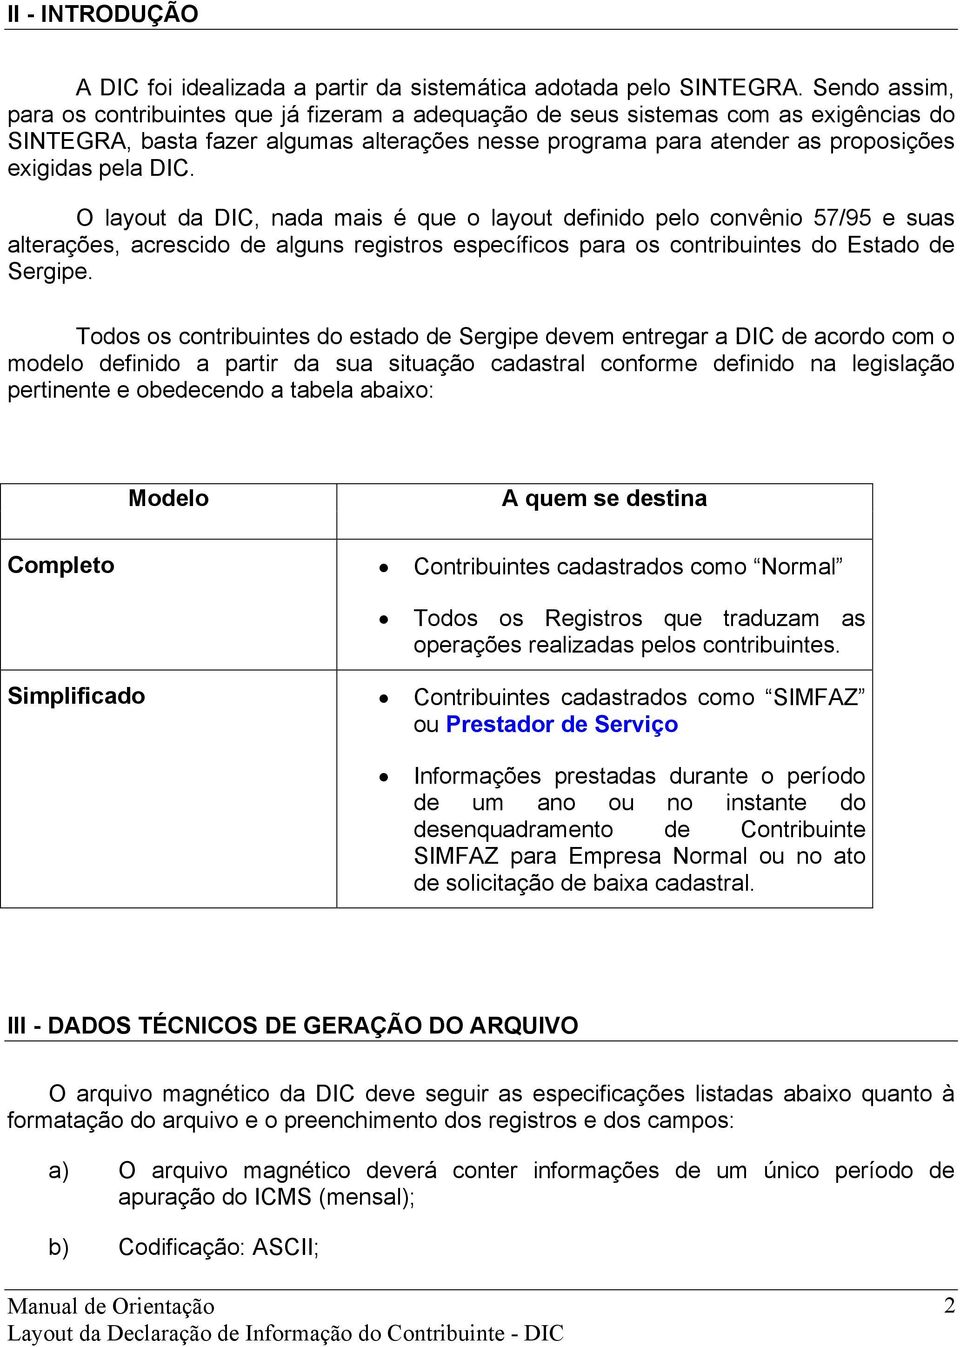 DIC. O layout da DIC, nada mais é que o layout definido pelo convênio 57/95 e suas alterações, acrescido de alguns registros específicos para os contribuintes do Estado de Sergipe.